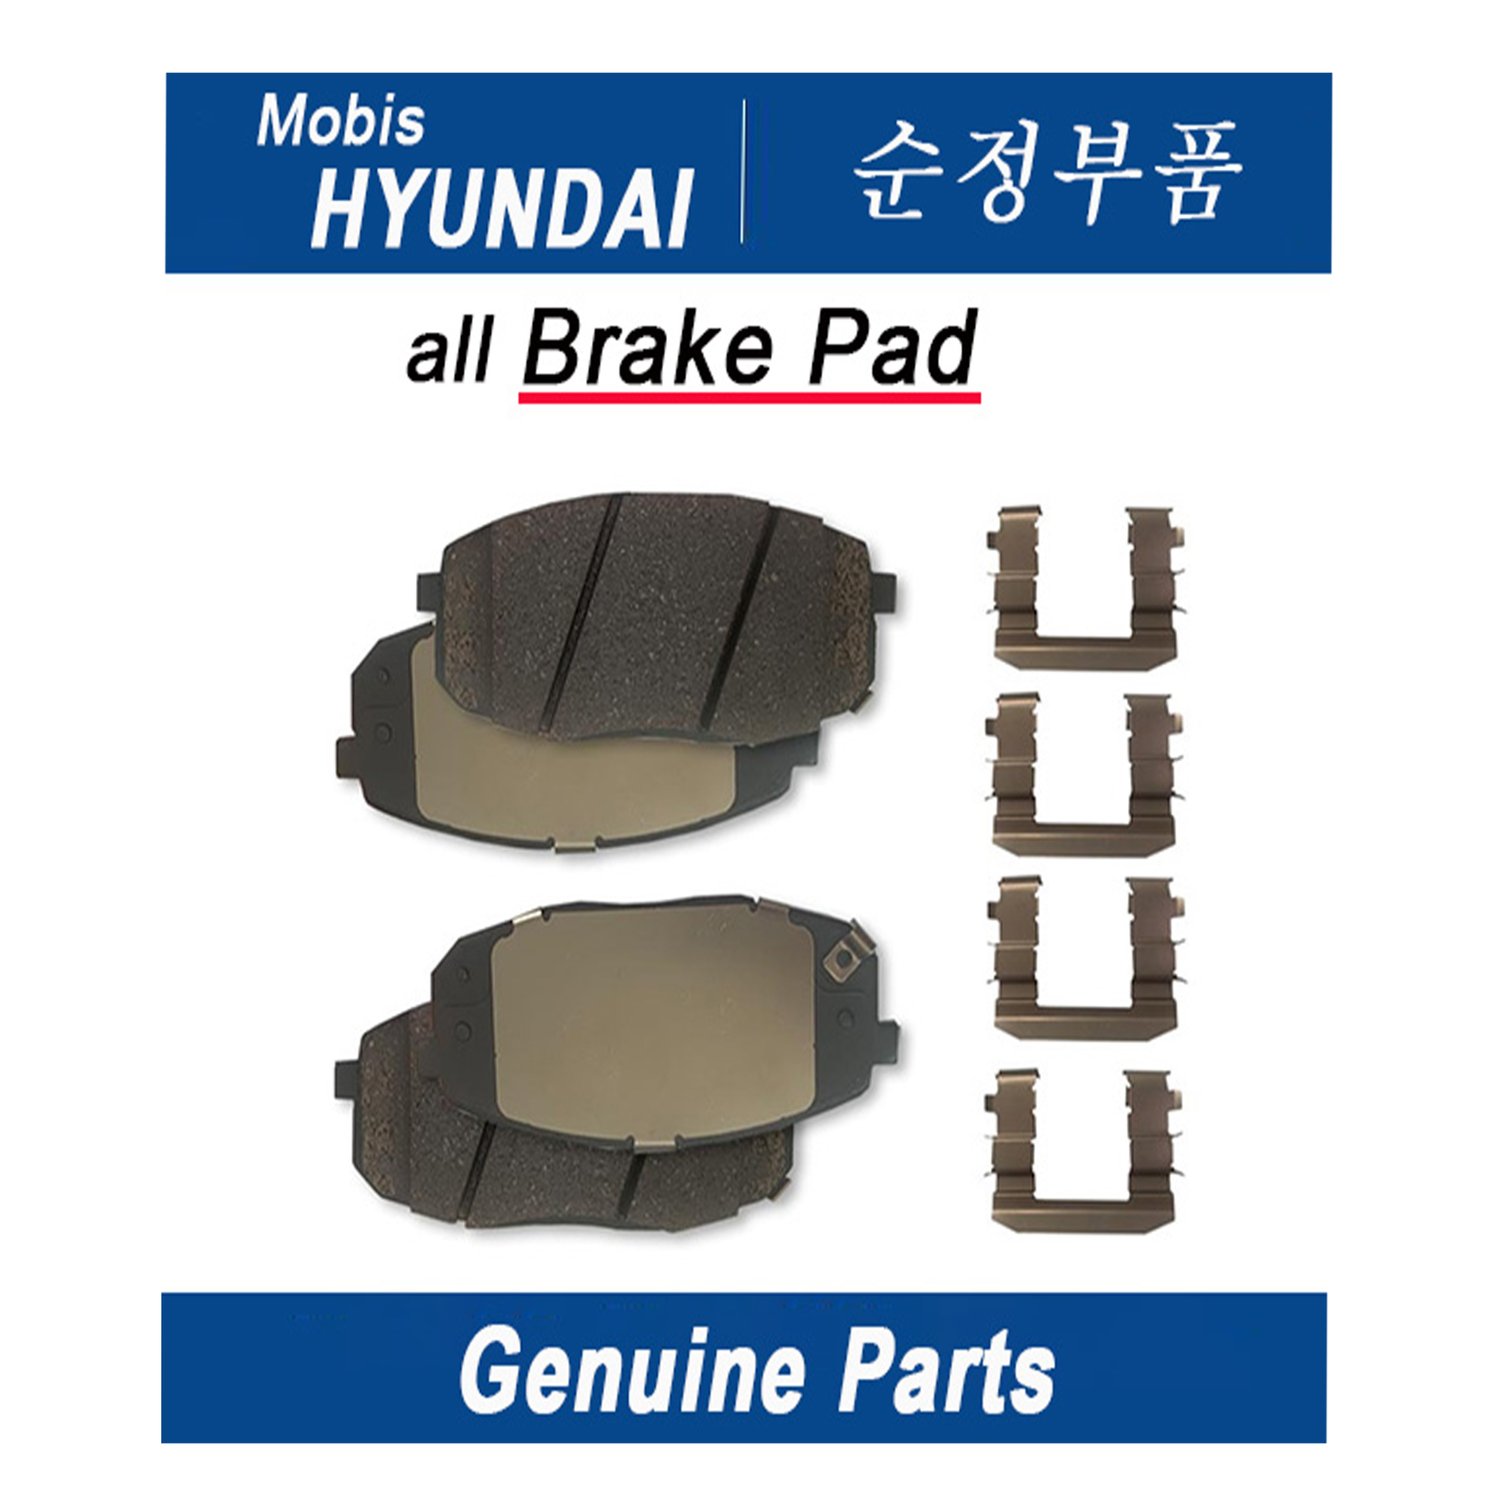 Brake Pad _ PLUG ASSY_SPARK _ Genuine Korean Automotive Spare Parts _ Hyundai Kia _Mobis_